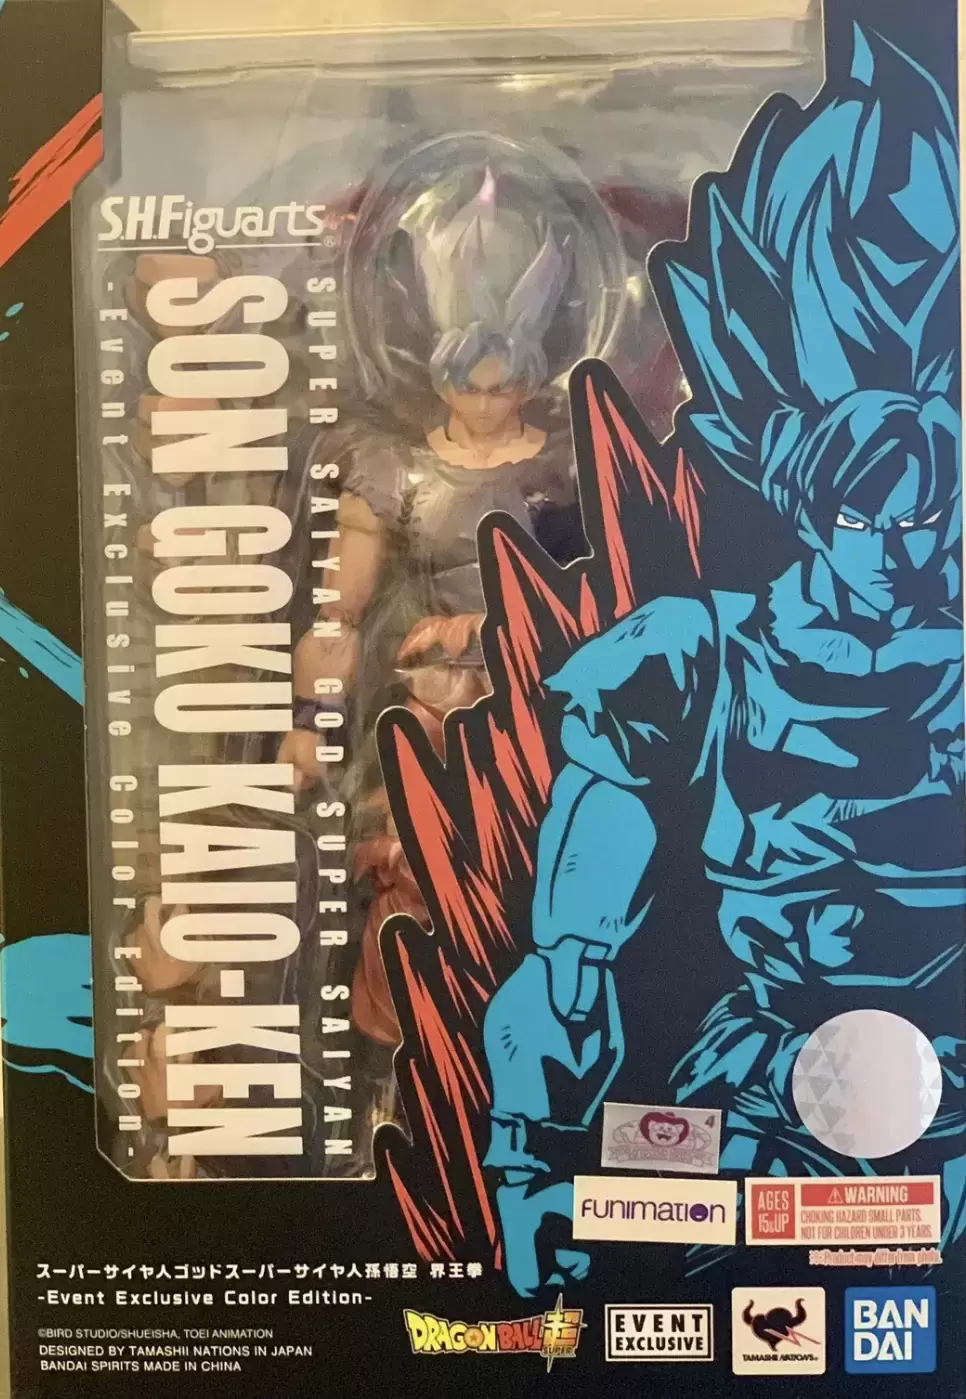 Bandai 2021 NYCC S.H. Figuarts Super Saiyan God Son Goku Kaio-Ken